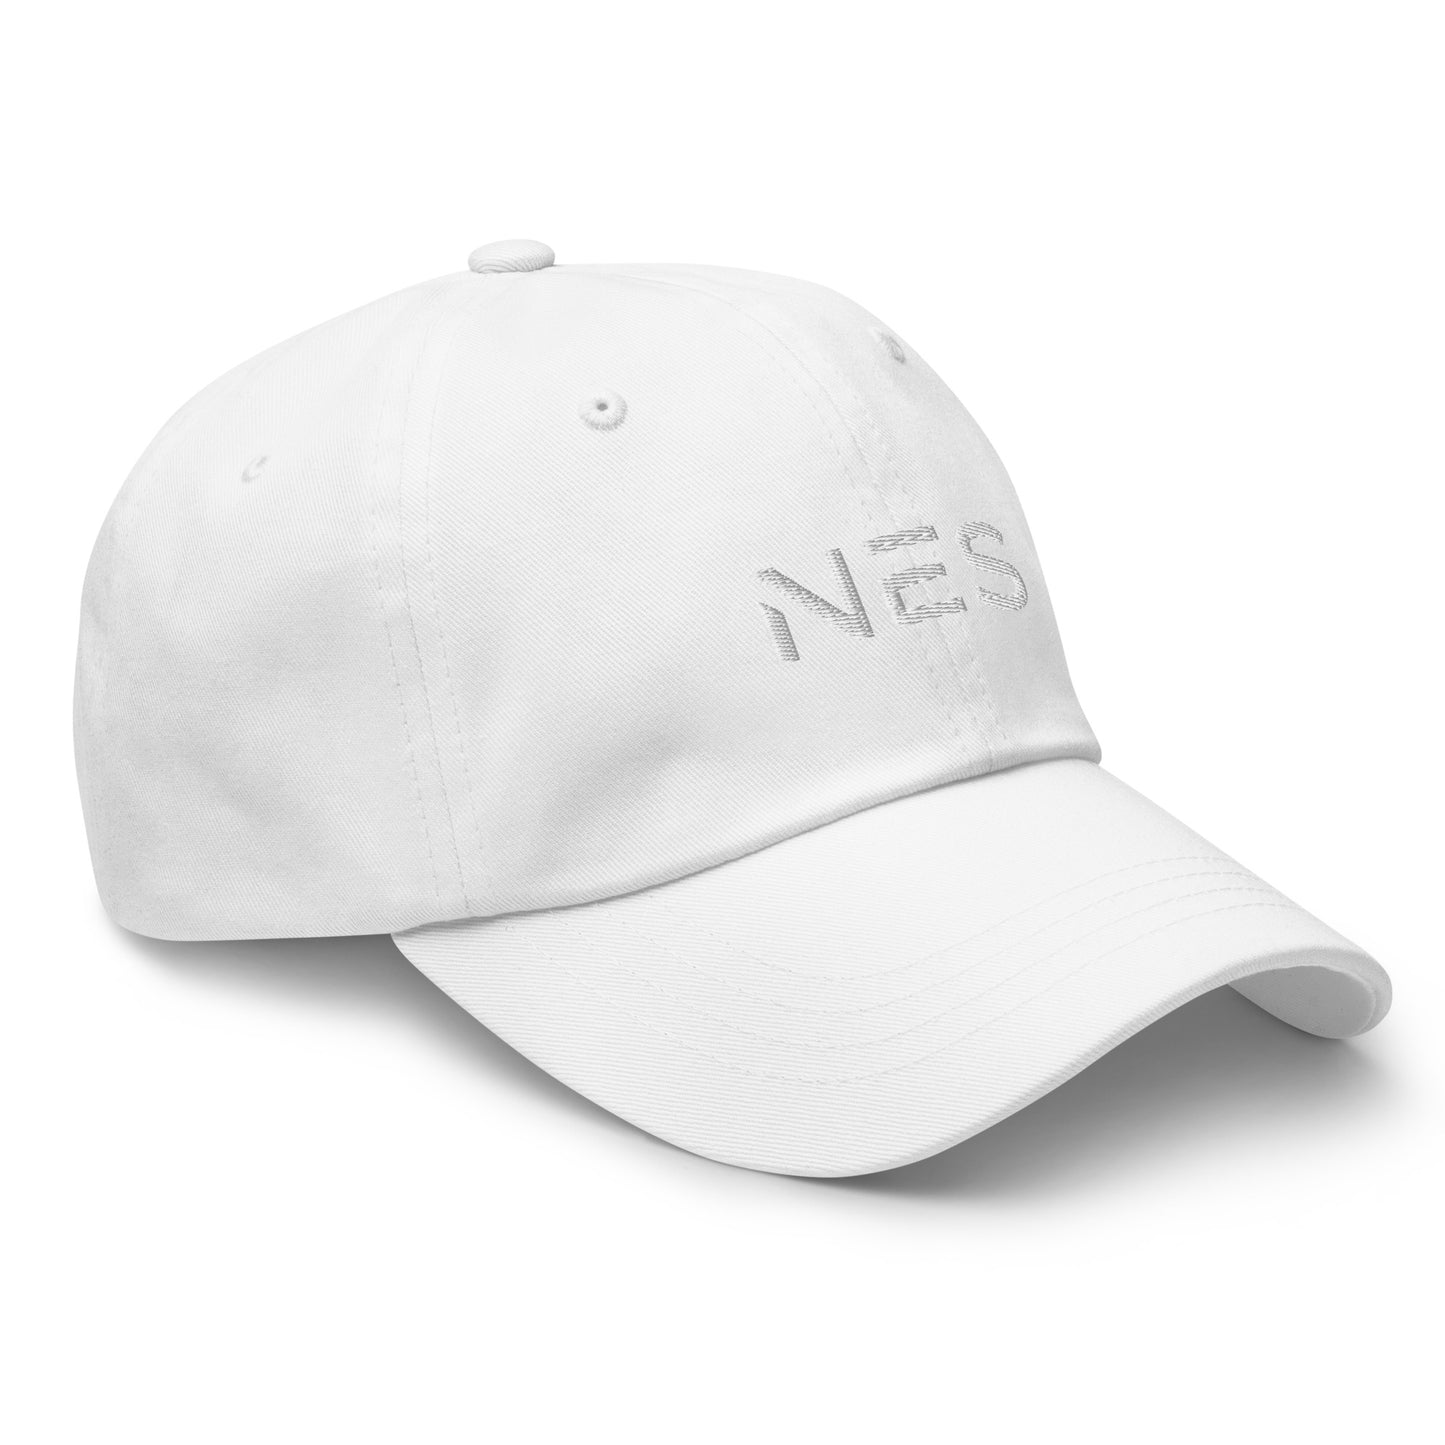 NES Dad Hat